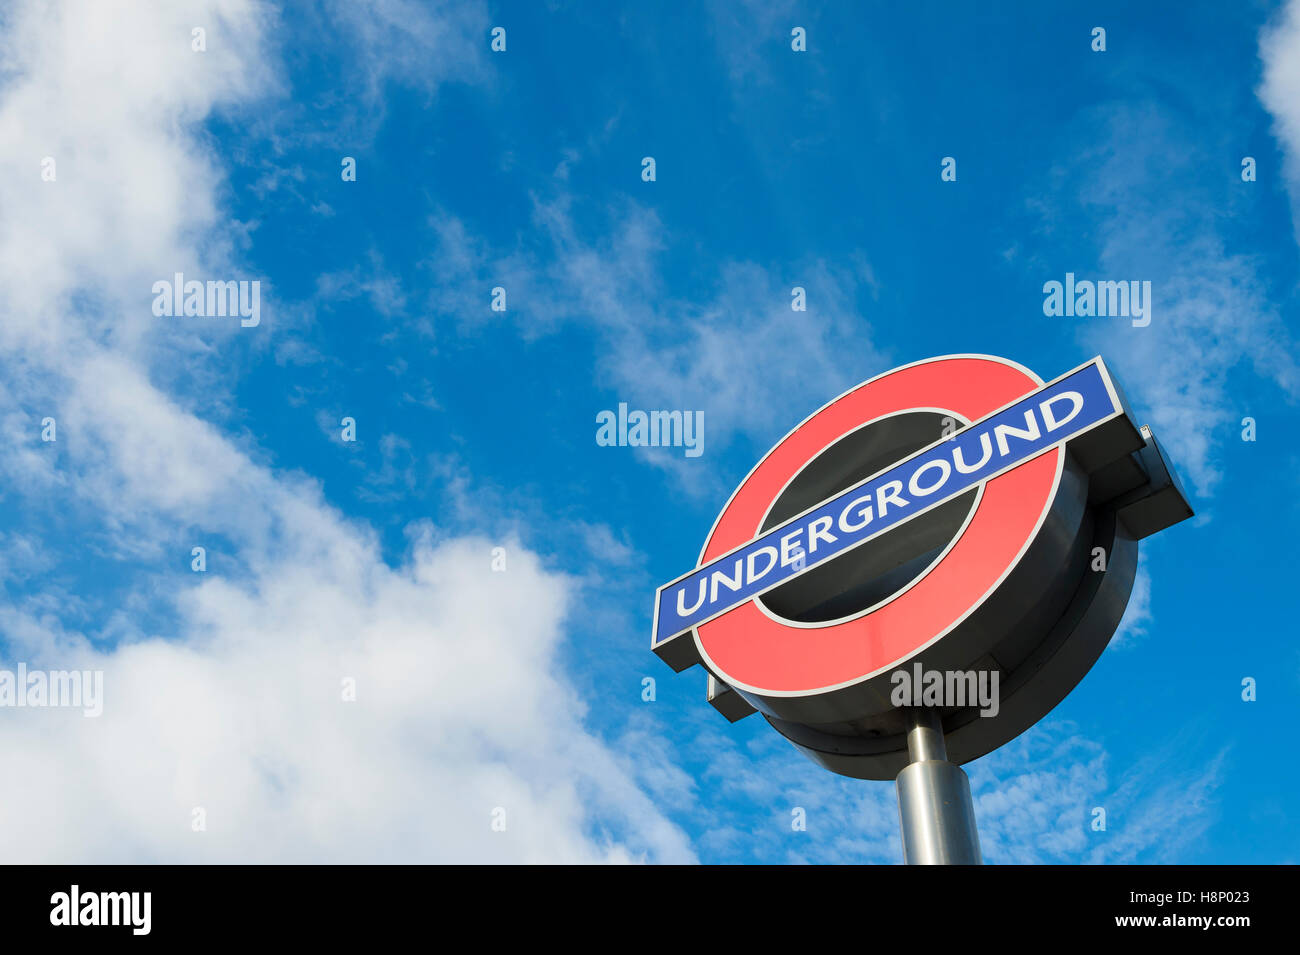 LONDON - 14. November 2016: Klassische Londoner U-Bahn Rondell Zeichen, ein Symbol der Manager Frank Pick in den 1900er Jahren gutgeschrieben. Stockfoto